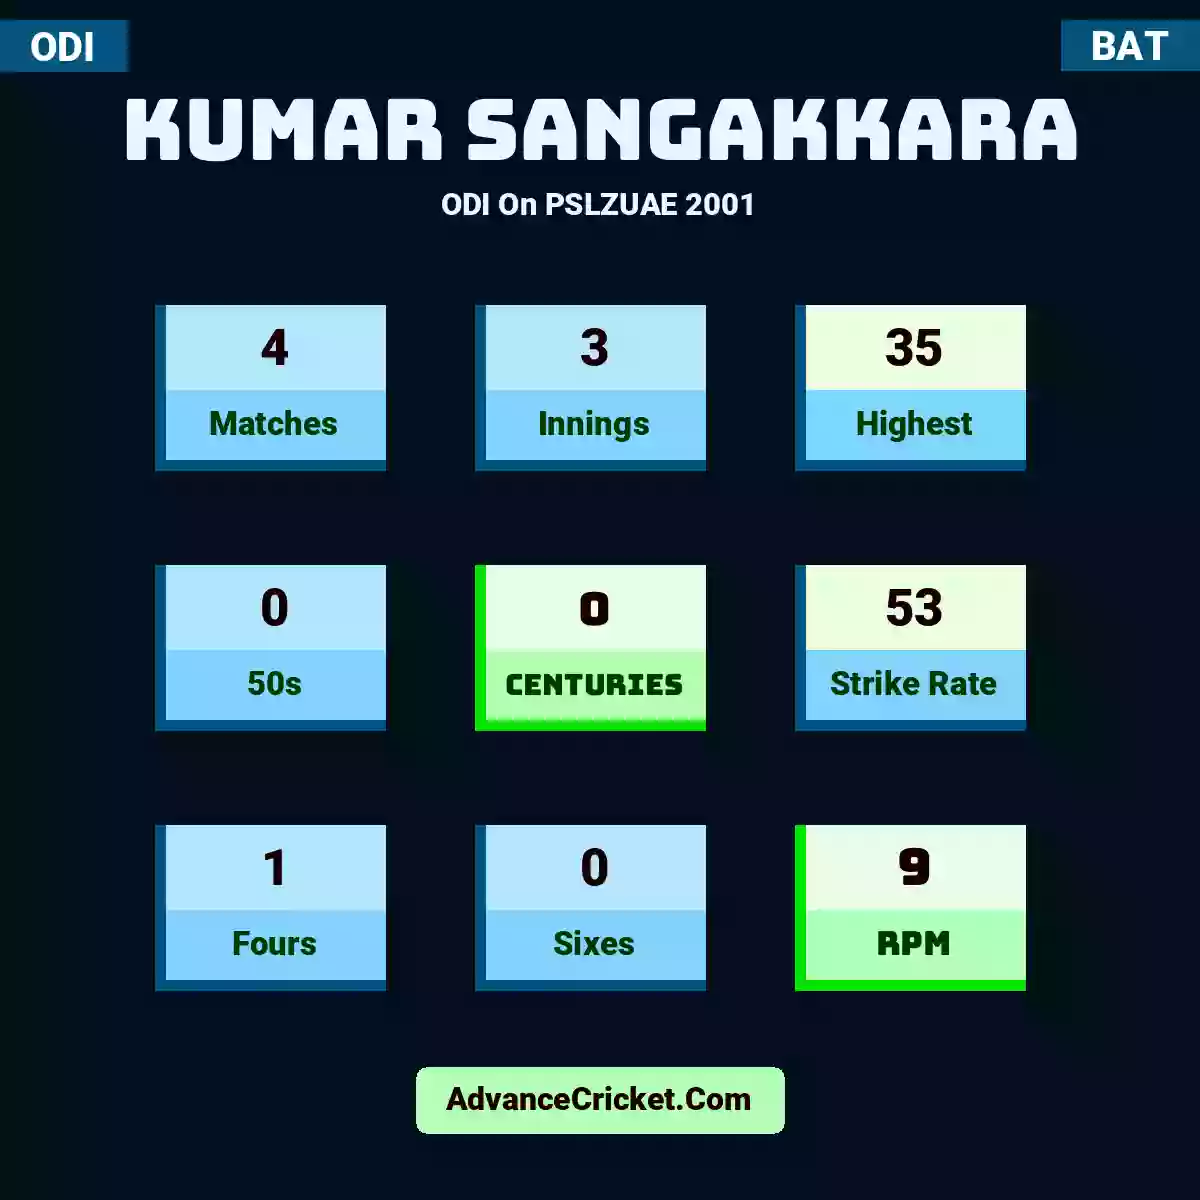 Kumar Sangakkara ODI  On PSLZUAE 2001, Kumar Sangakkara played 4 matches, scored 35 runs as highest, 0 half-centuries, and 0 centuries, with a strike rate of 53. K.Sangakkara hit 1 fours and 0 sixes, with an RPM of 9.